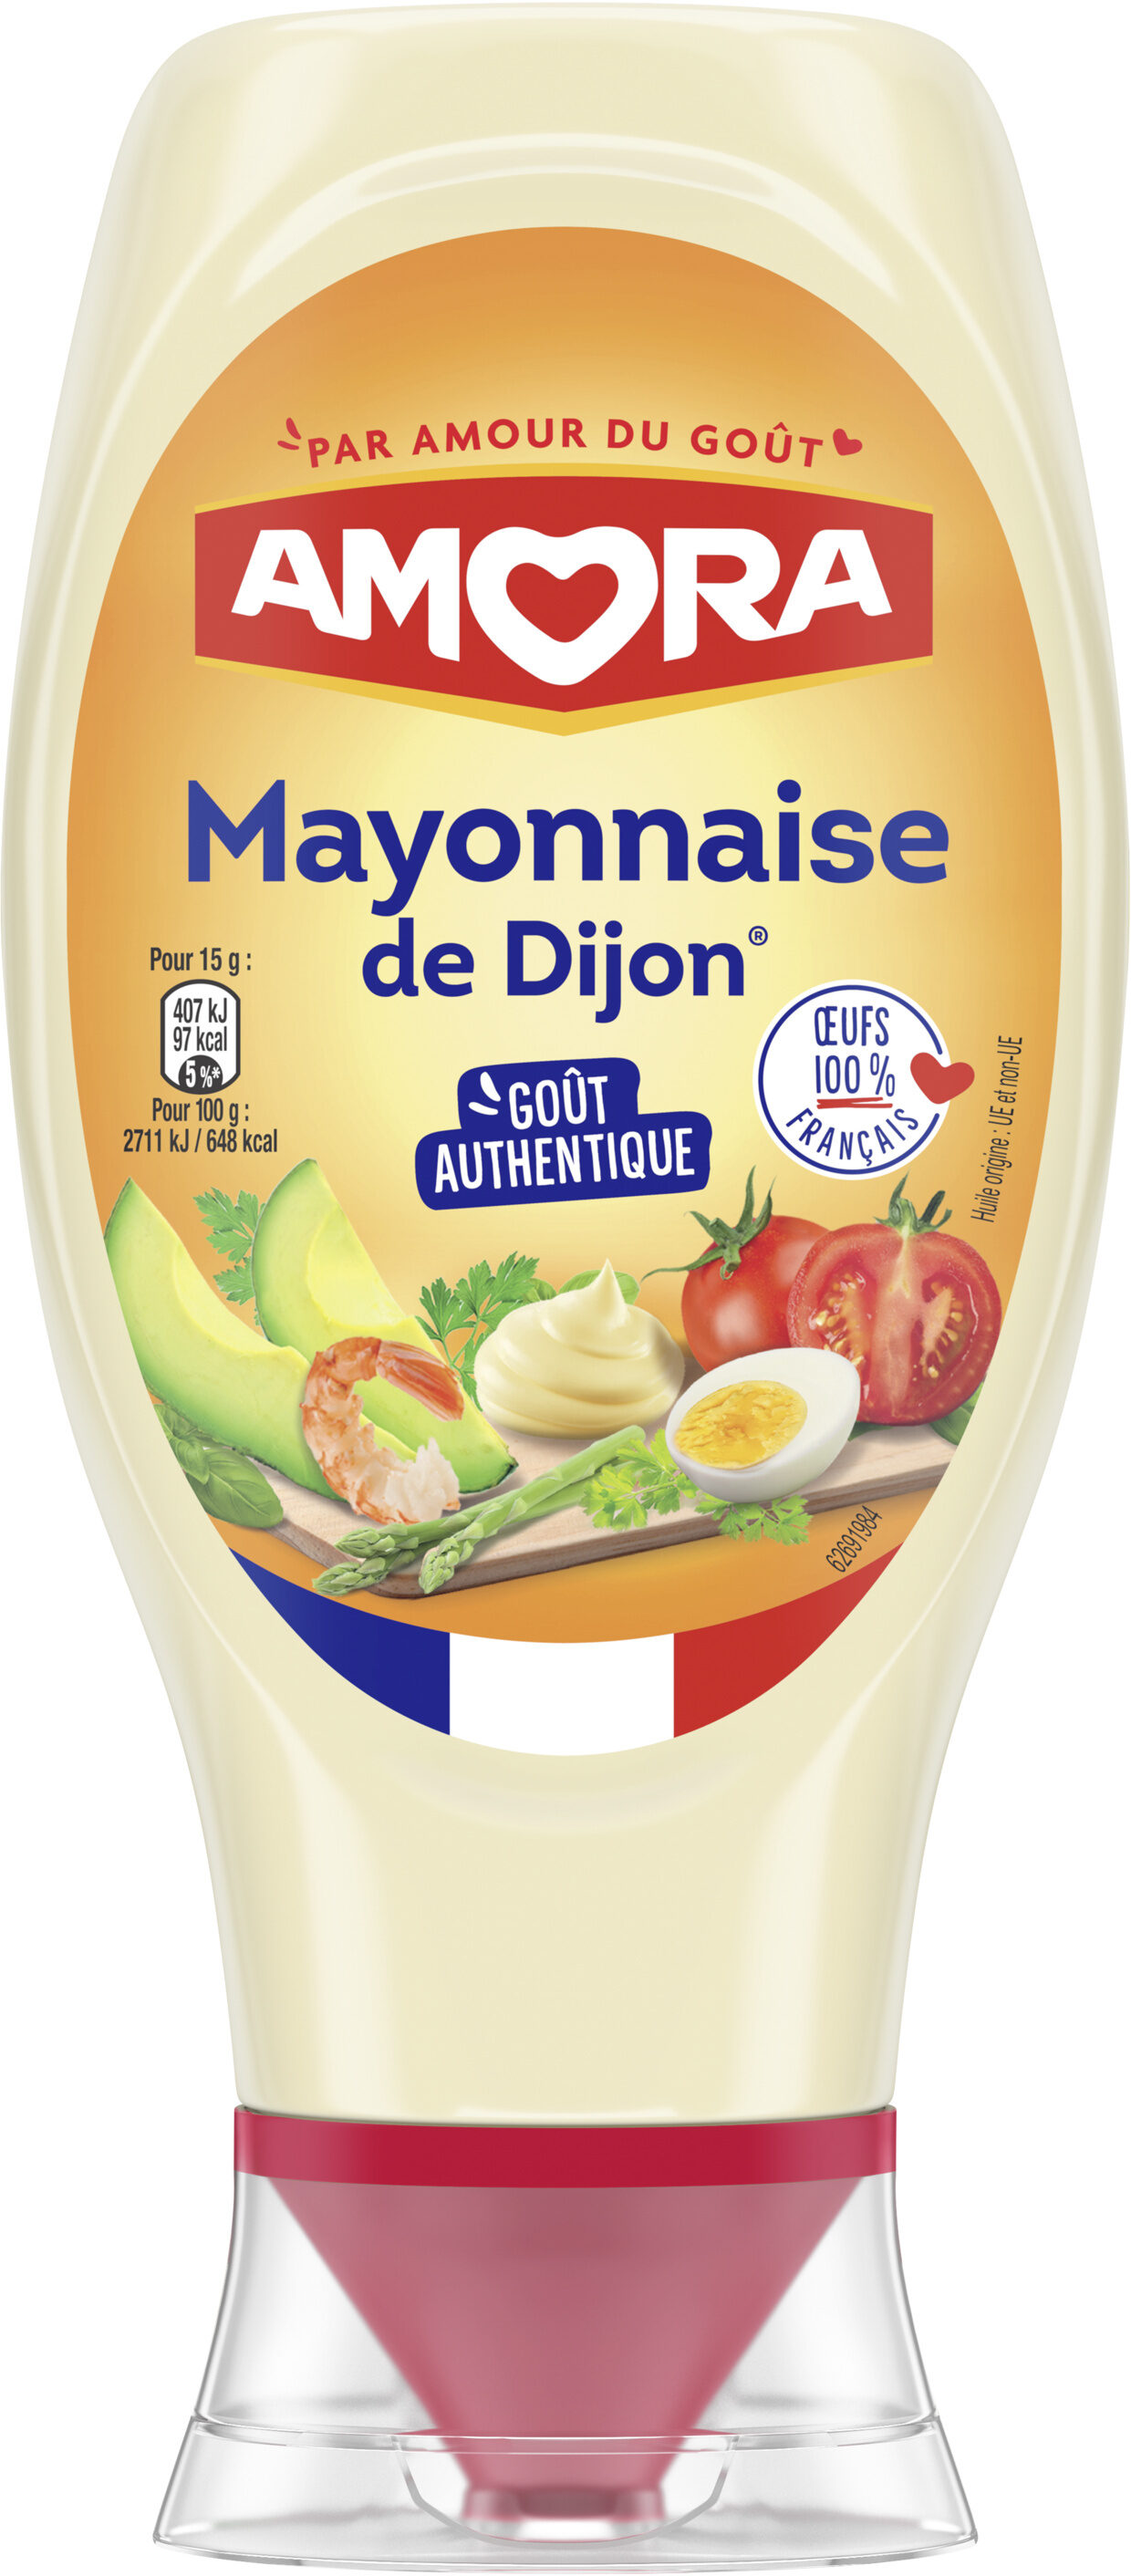 Amora grand mayonn 415g - Produit